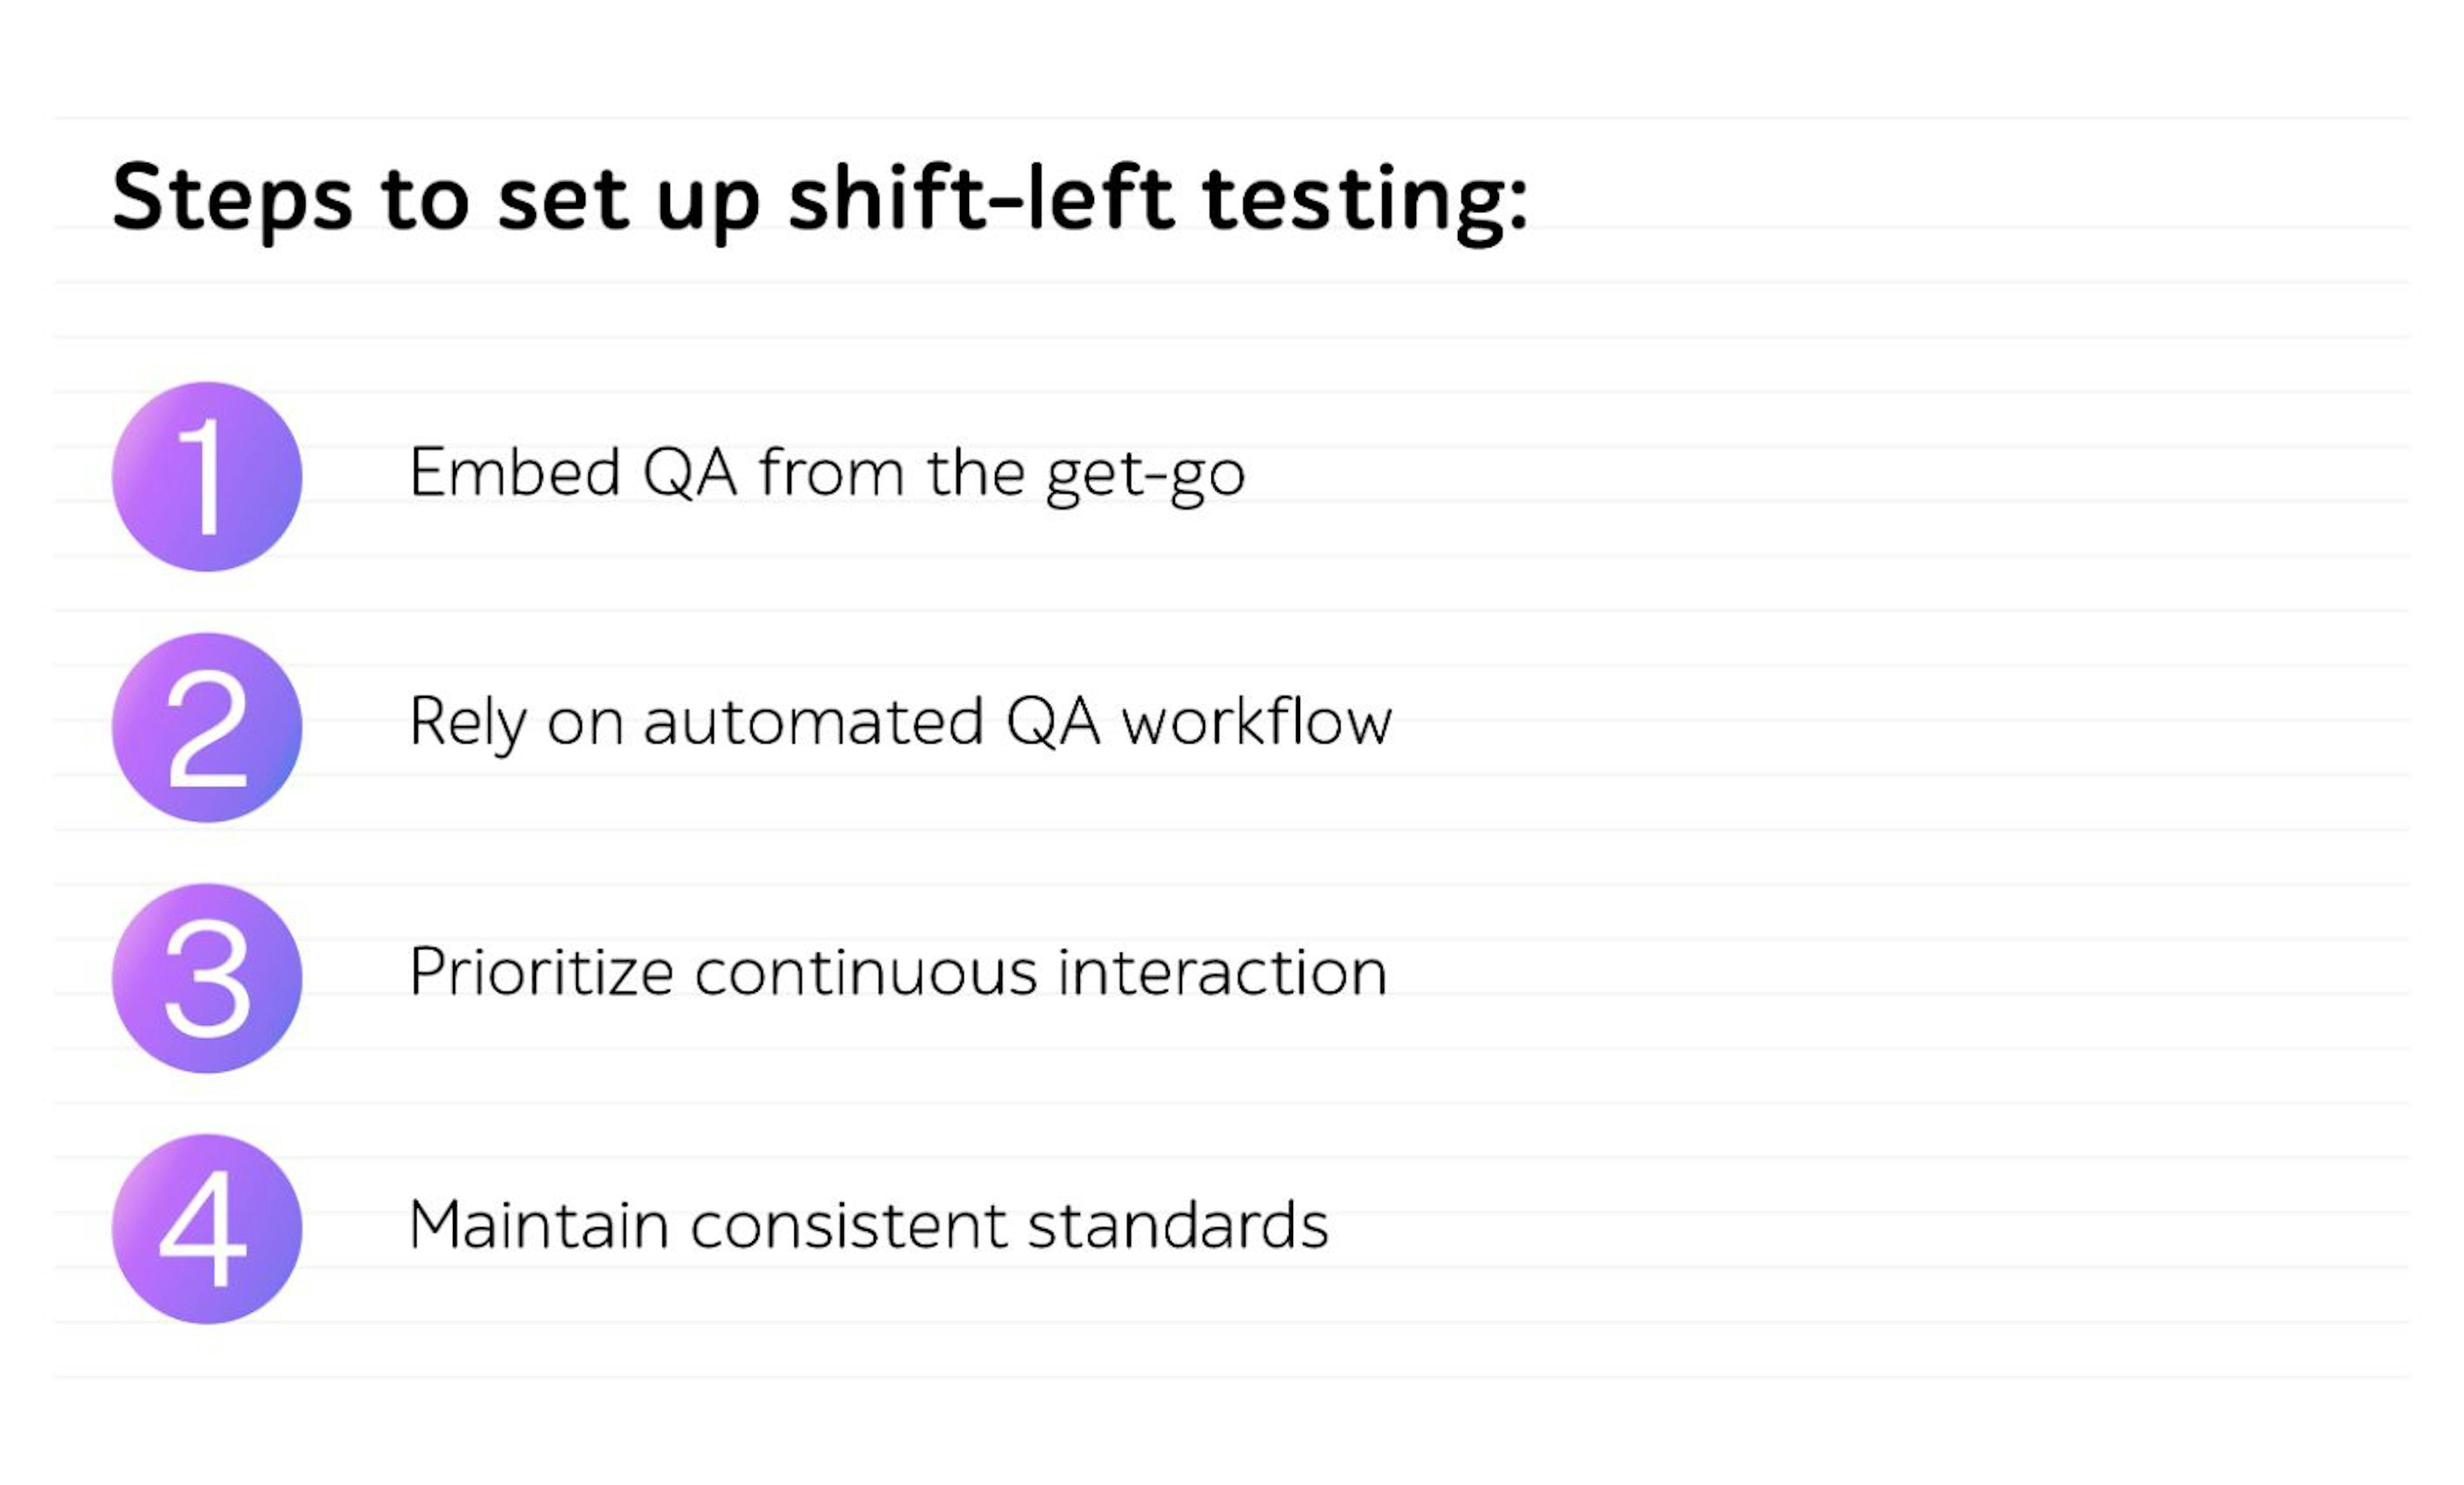 Steps to set up shift-left testing. 